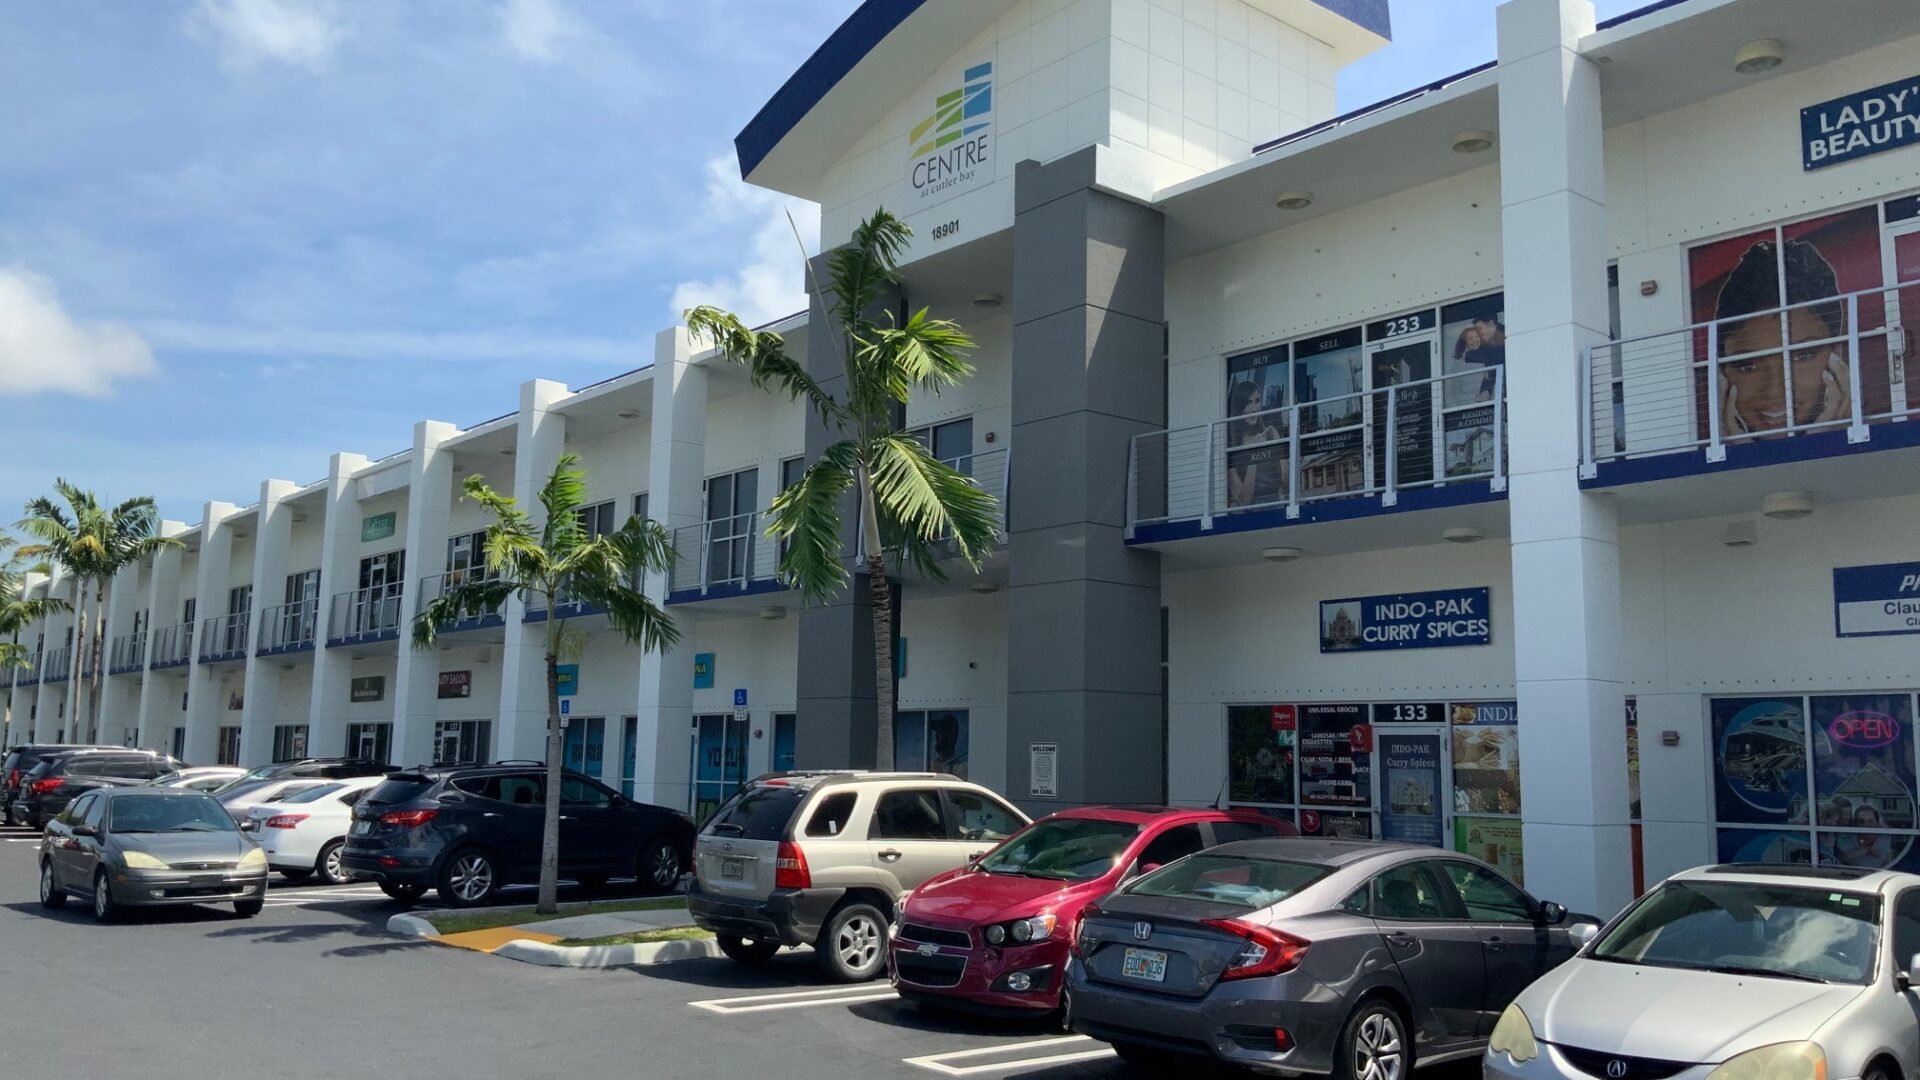 Centre at Cutler Bay Top South Florida Shopping Centers 2019